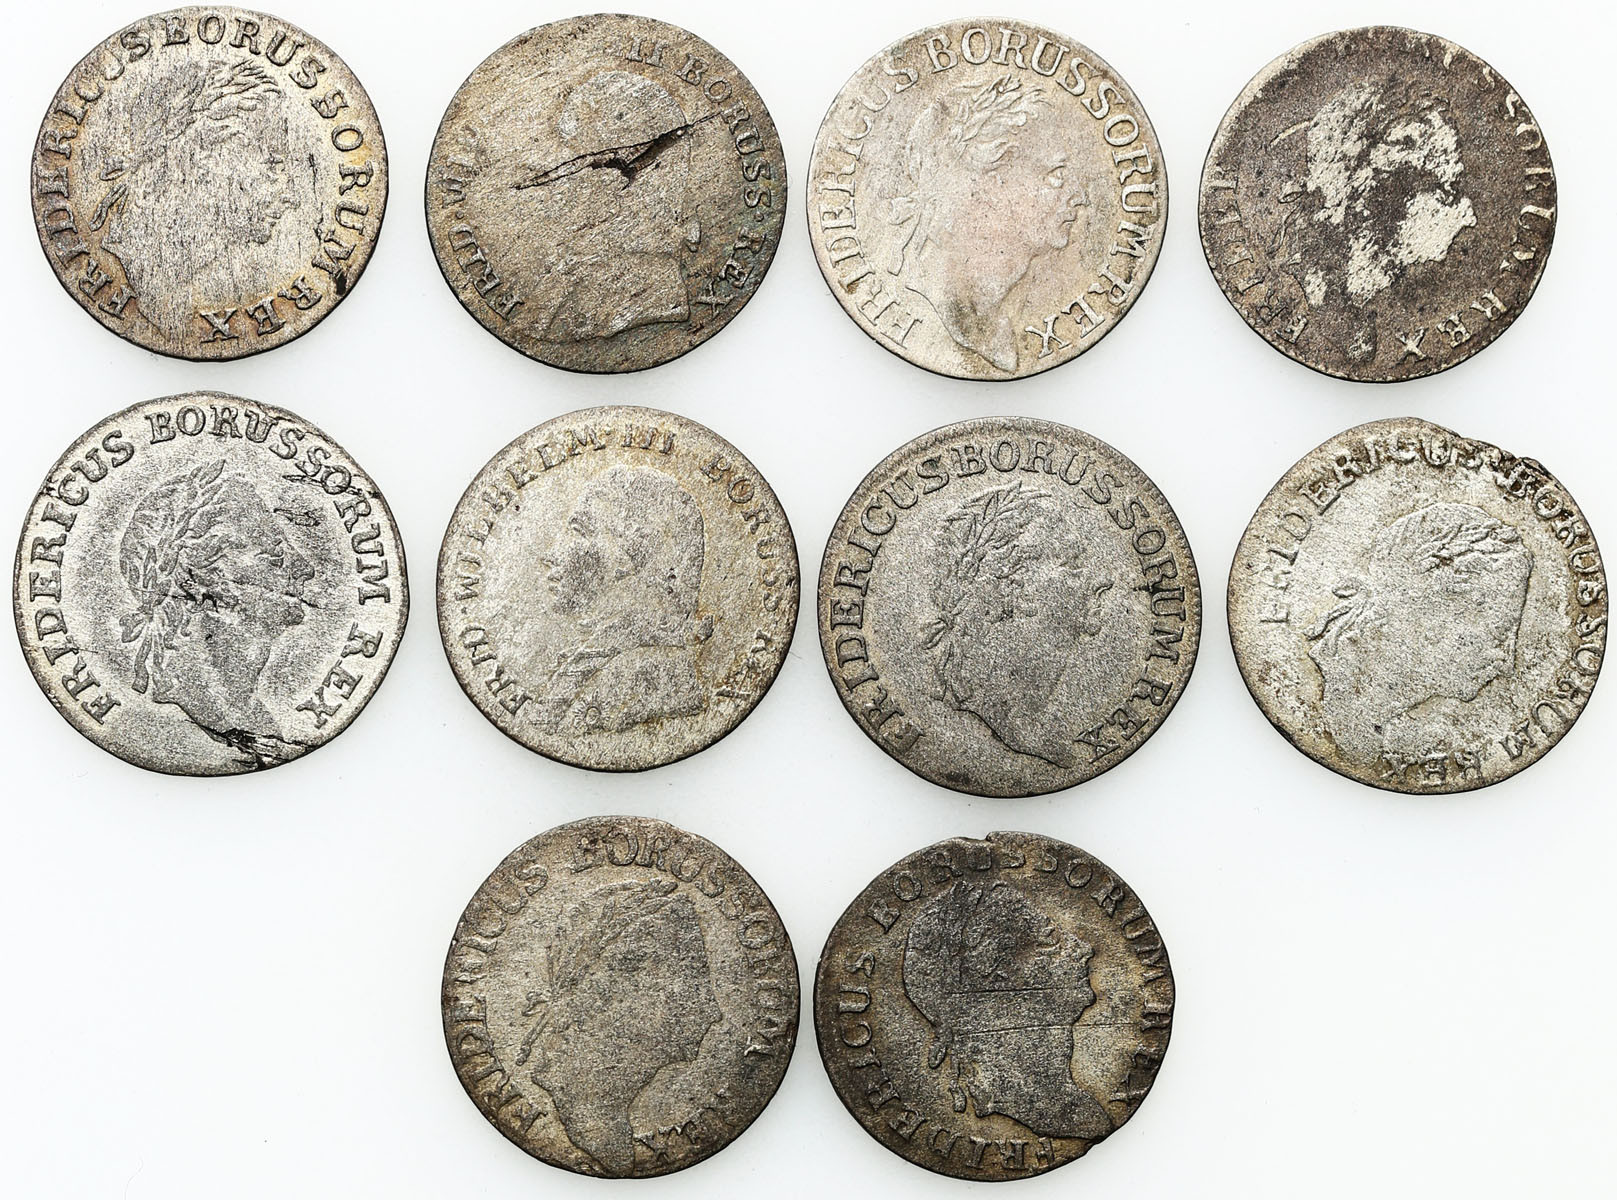 Niemcy, Prusy. 3 grosze 1771-1801, zestaw 10 monet